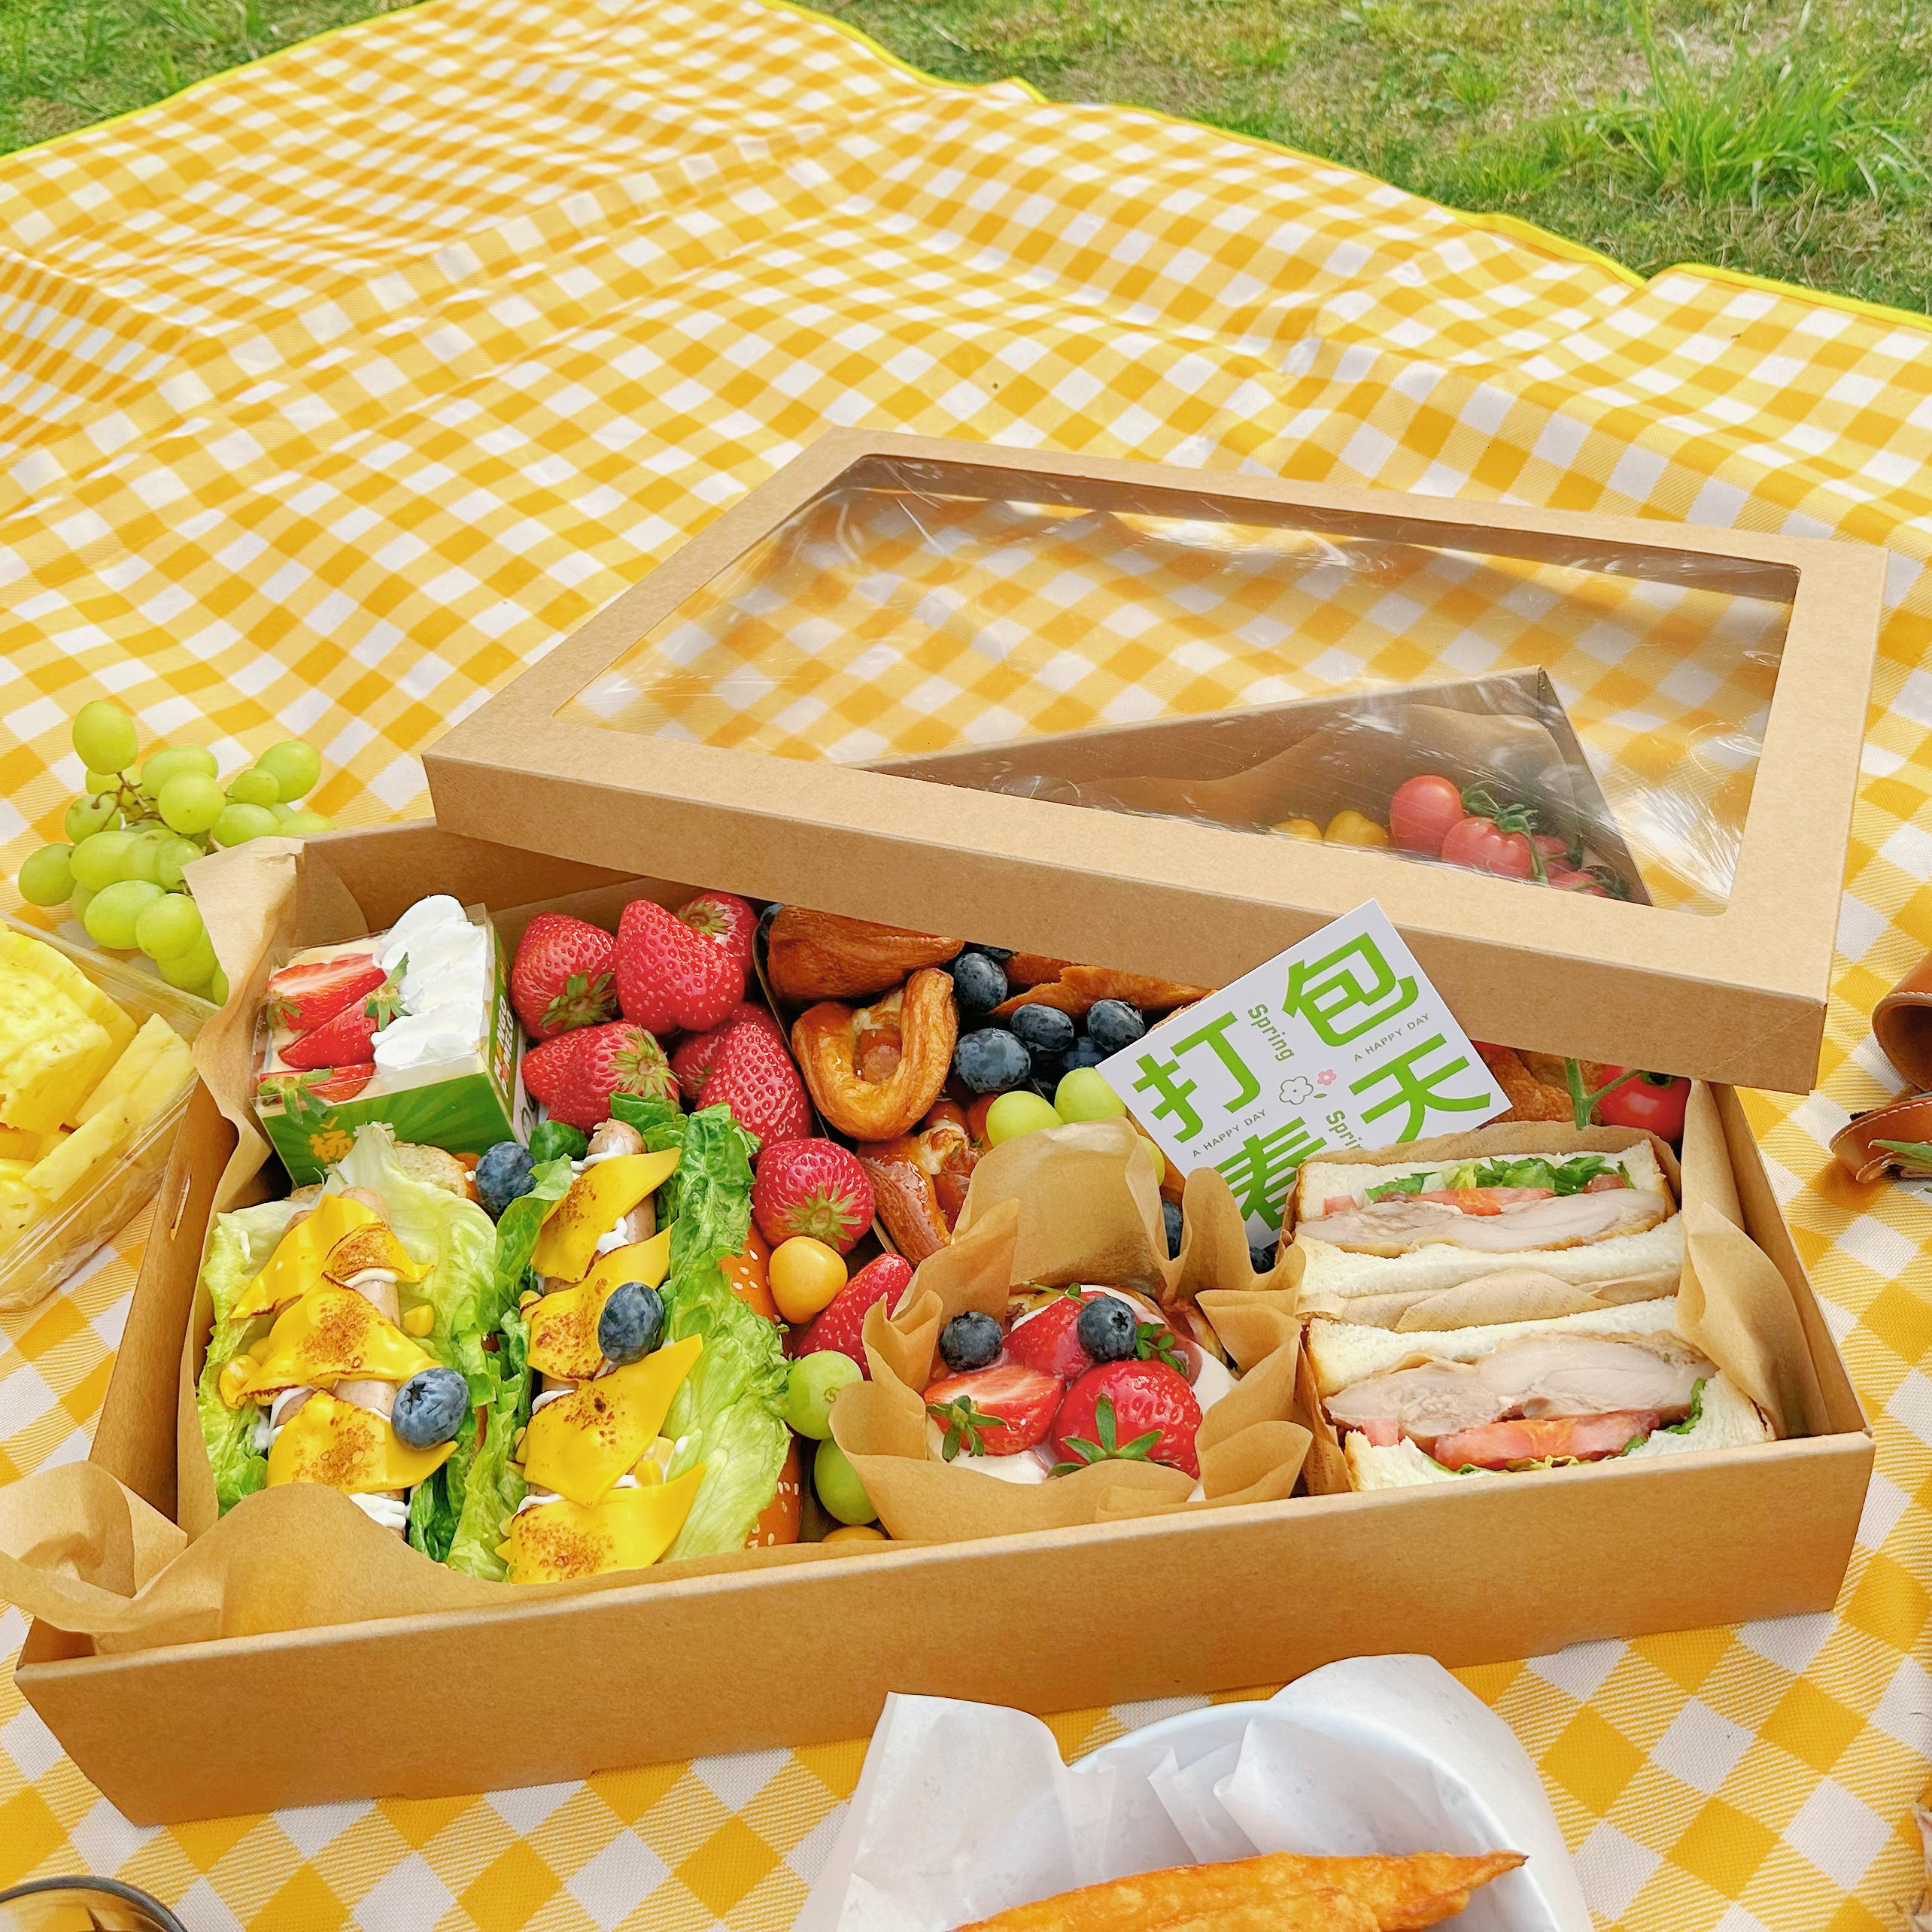 甜品打包盒长方形牛皮纸开窗盒 寿司水果轻食盒 下午茶露营野餐盒